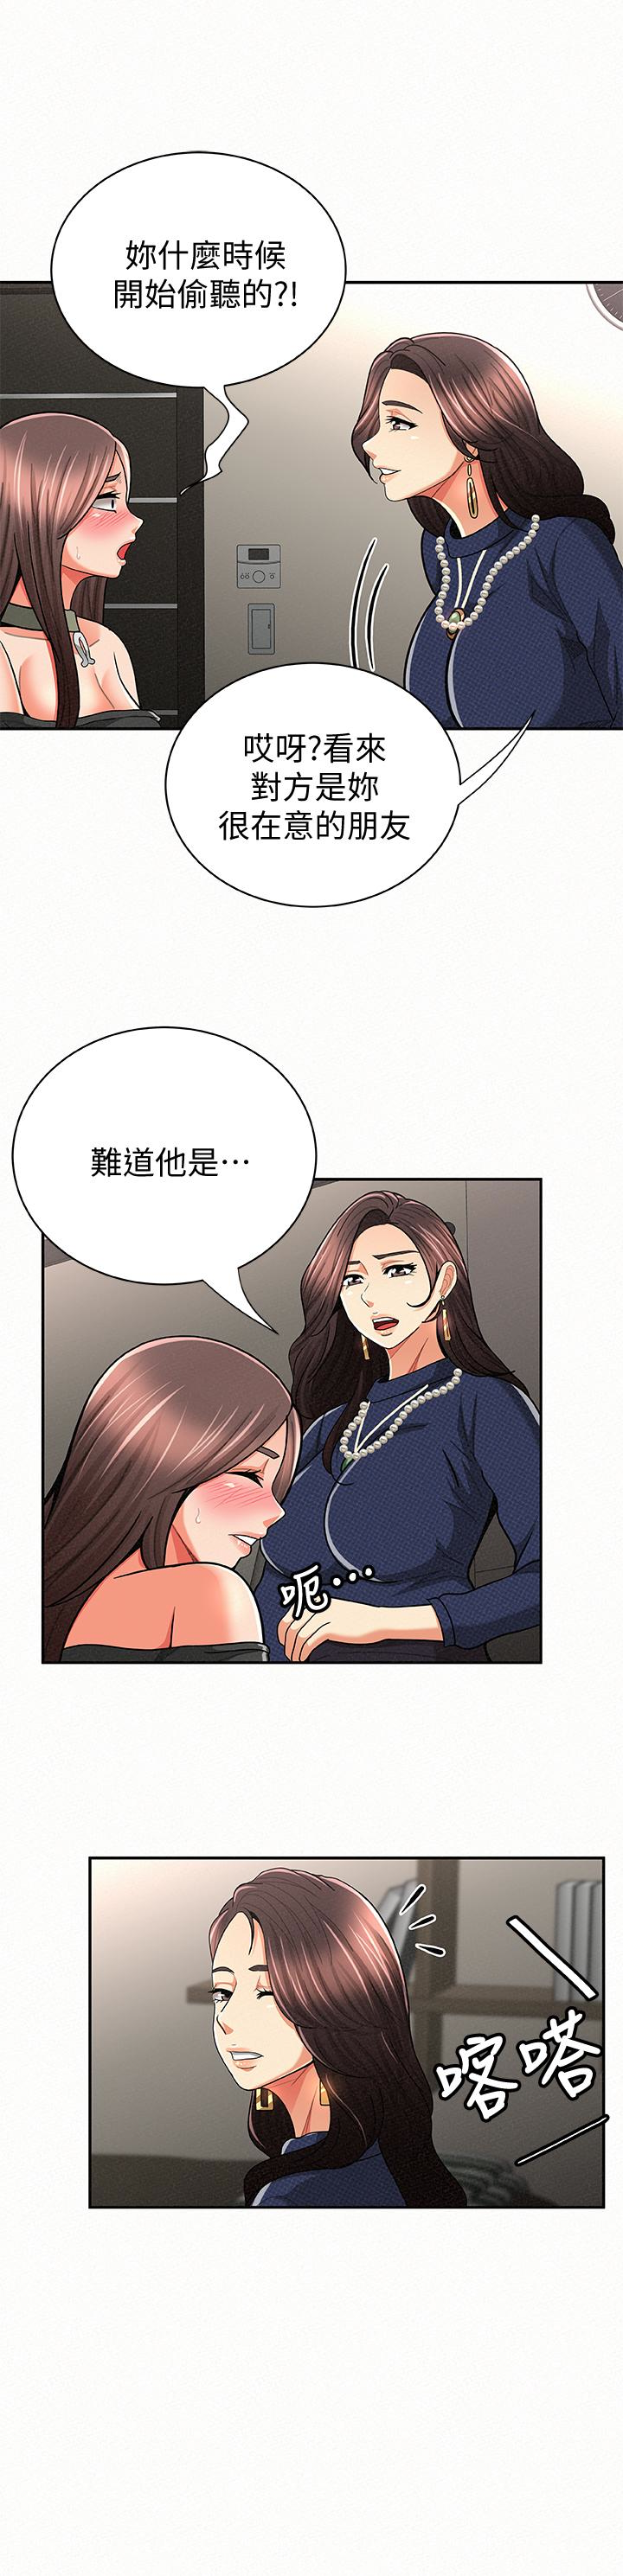 韩国污漫画 報告夫人 第30话-挑逗老公的景淑 18